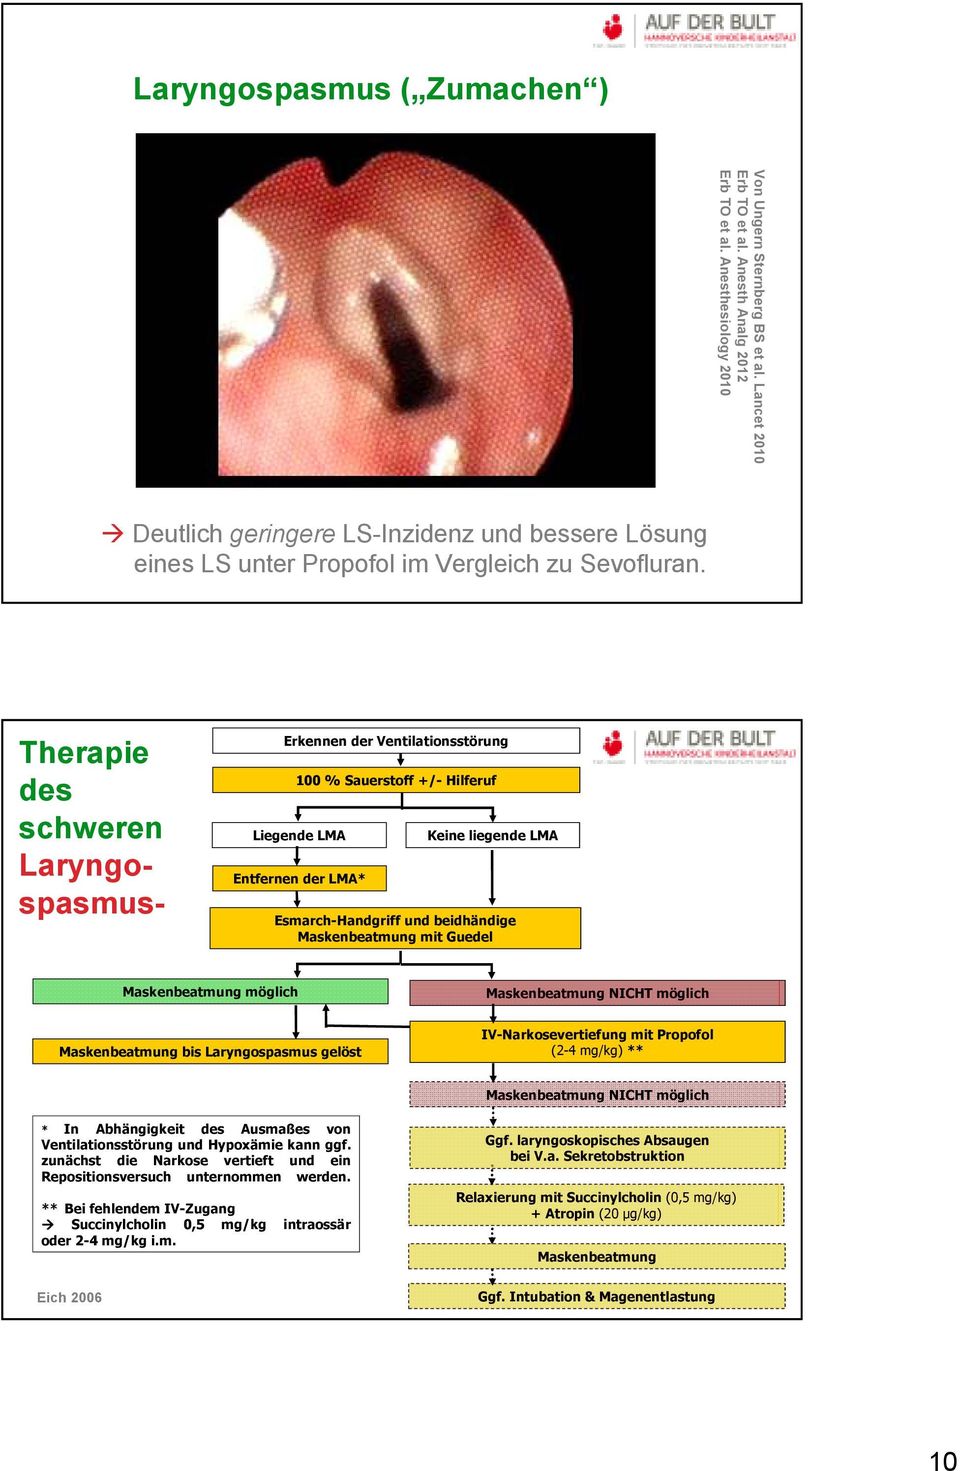 Therapie des schweren Laryngo- spasmus- Erkennen der Ventilationsstörung 100 % Sauerstoff +/- Hilferuf Liegende LMA Entfernen der LMA* Keine liegende LMA Esmarch-Handgriff und beidhändige